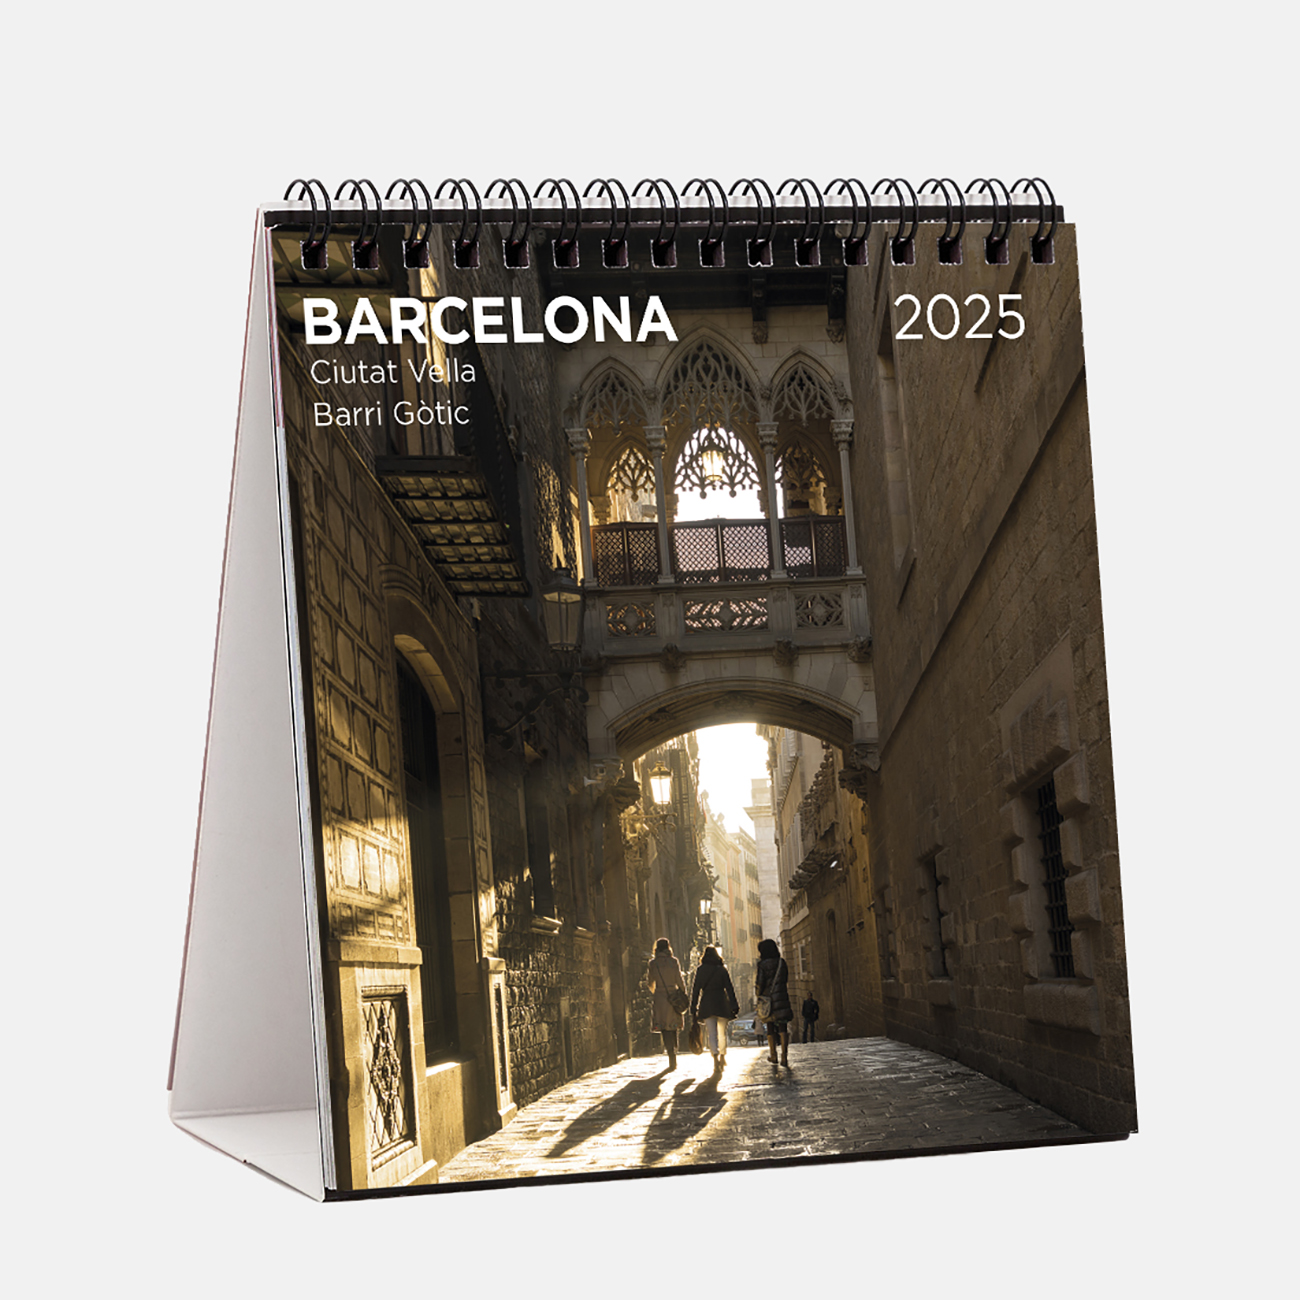 Calendari 2025 Barcelona (Ciutat Vella) s25b2 calendario sobremesa 2025 barcelona